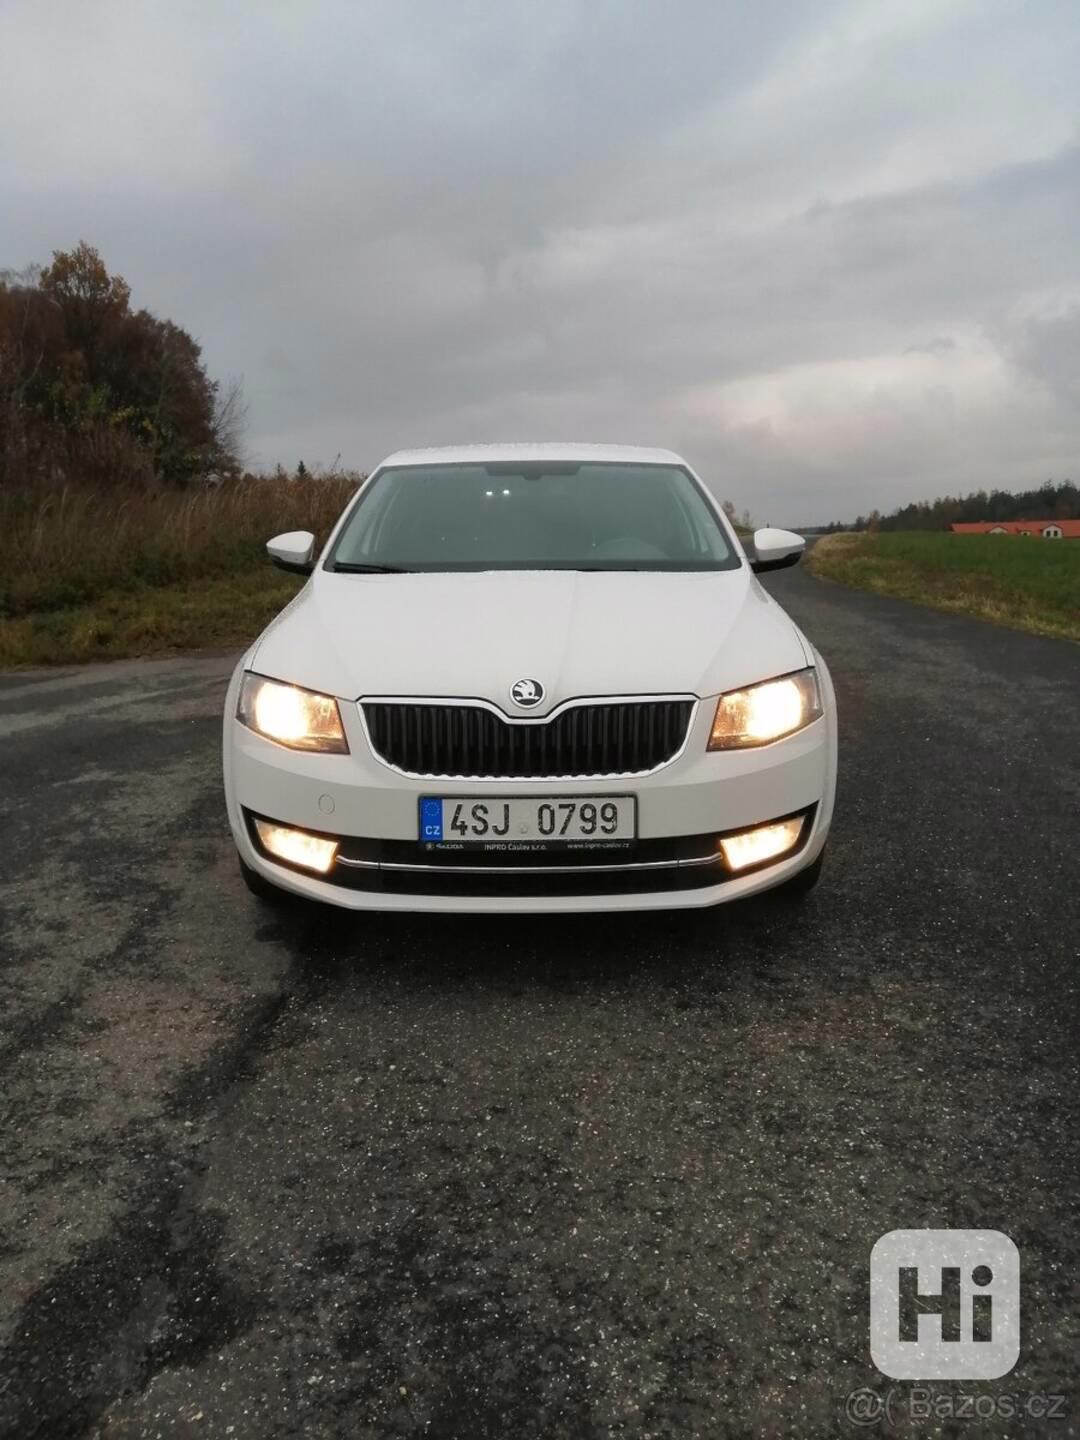 Škoda Octavia 3, 4x4, 242 tisíc km 2015 - foto 1